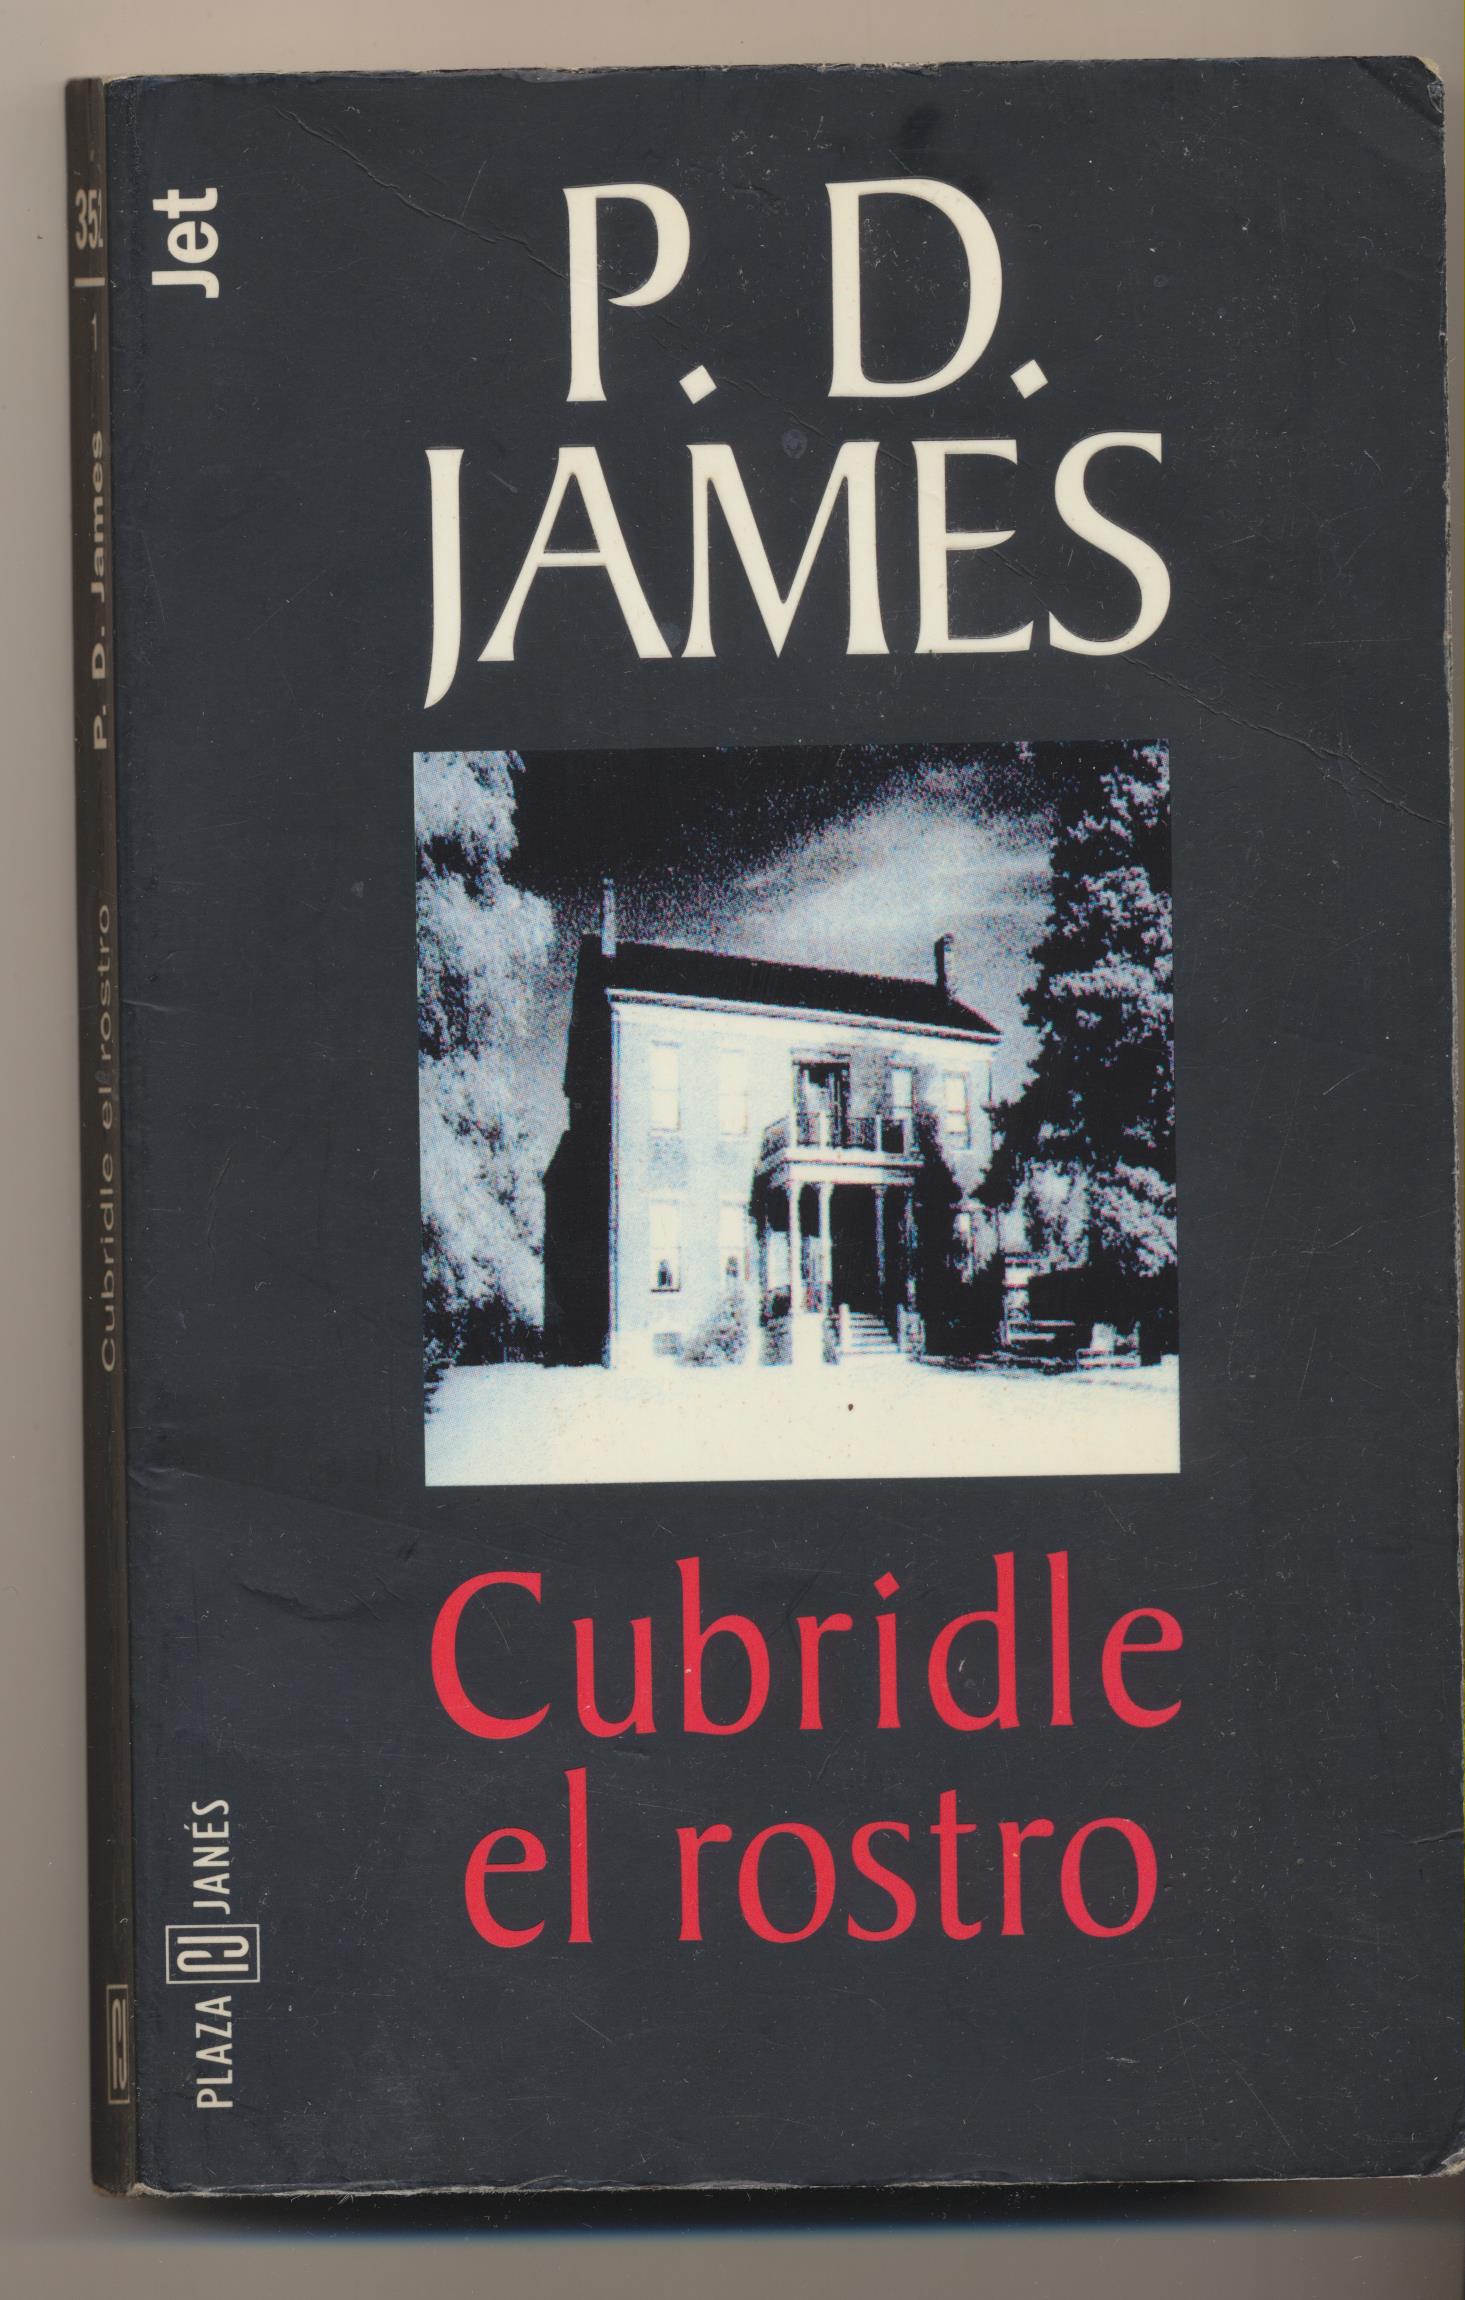 P. D. james. Cubridle el rostro. 2ª Edición Plaza & Janes 1978